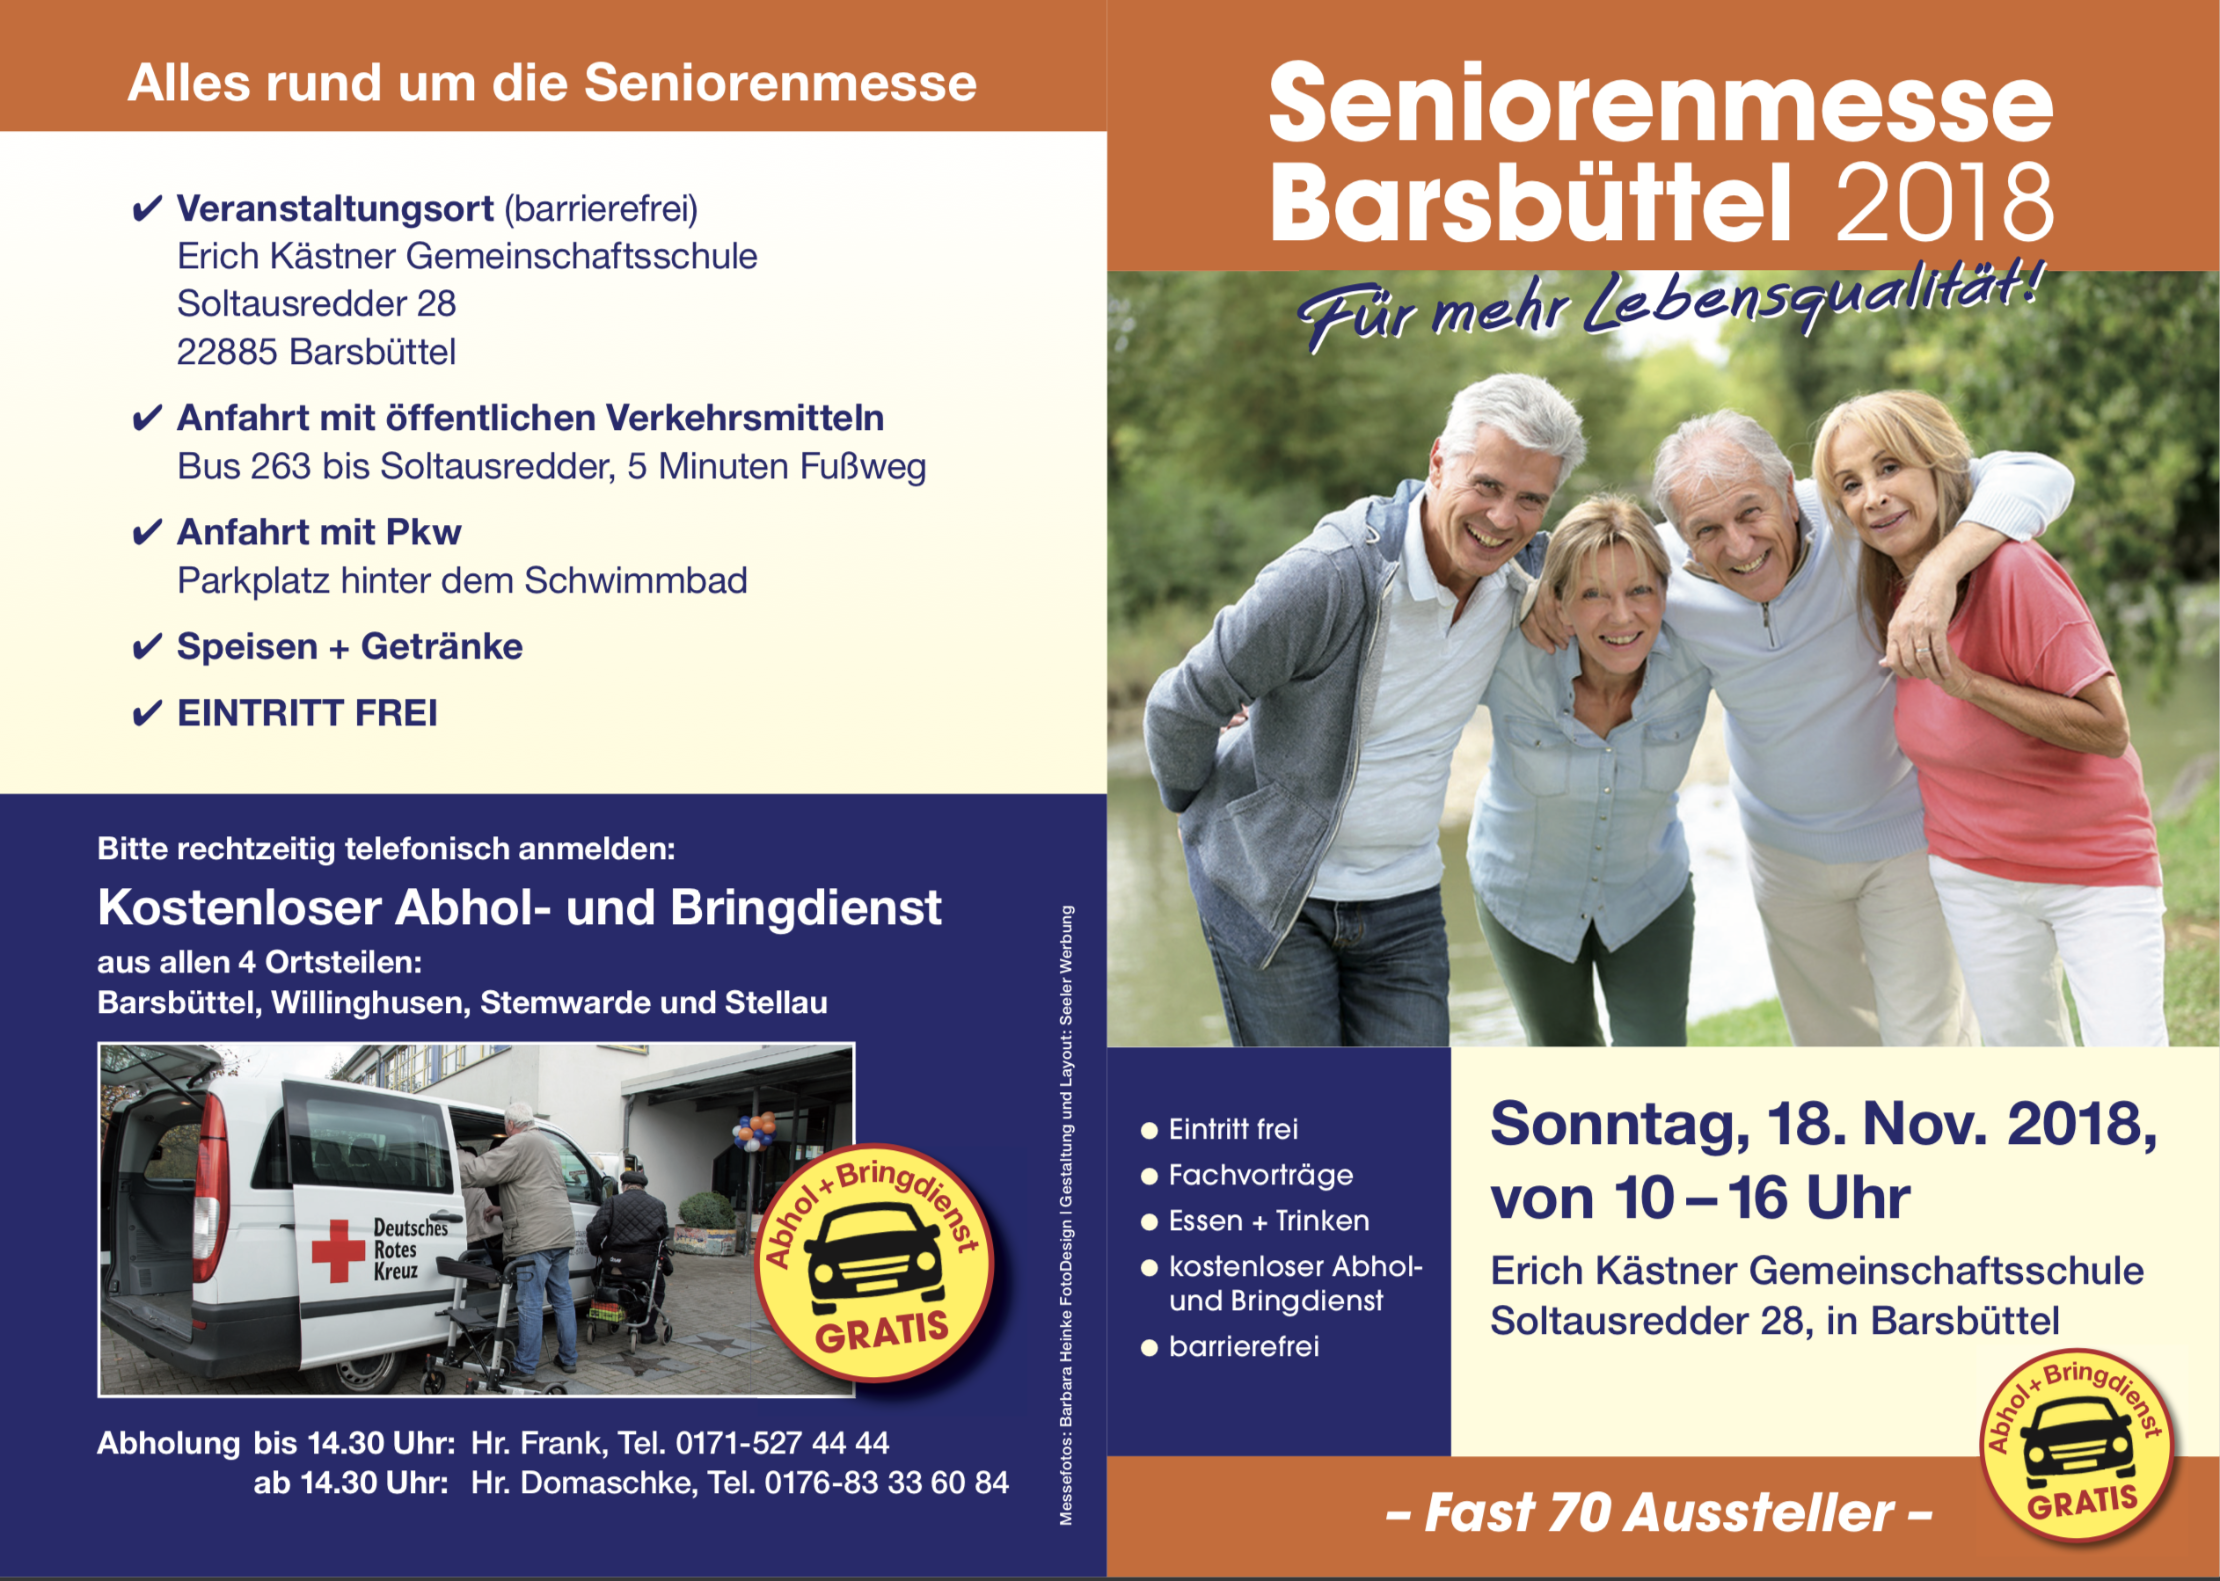 Seniorenmesse Barsbüttel 2019 - wir sind dabei!